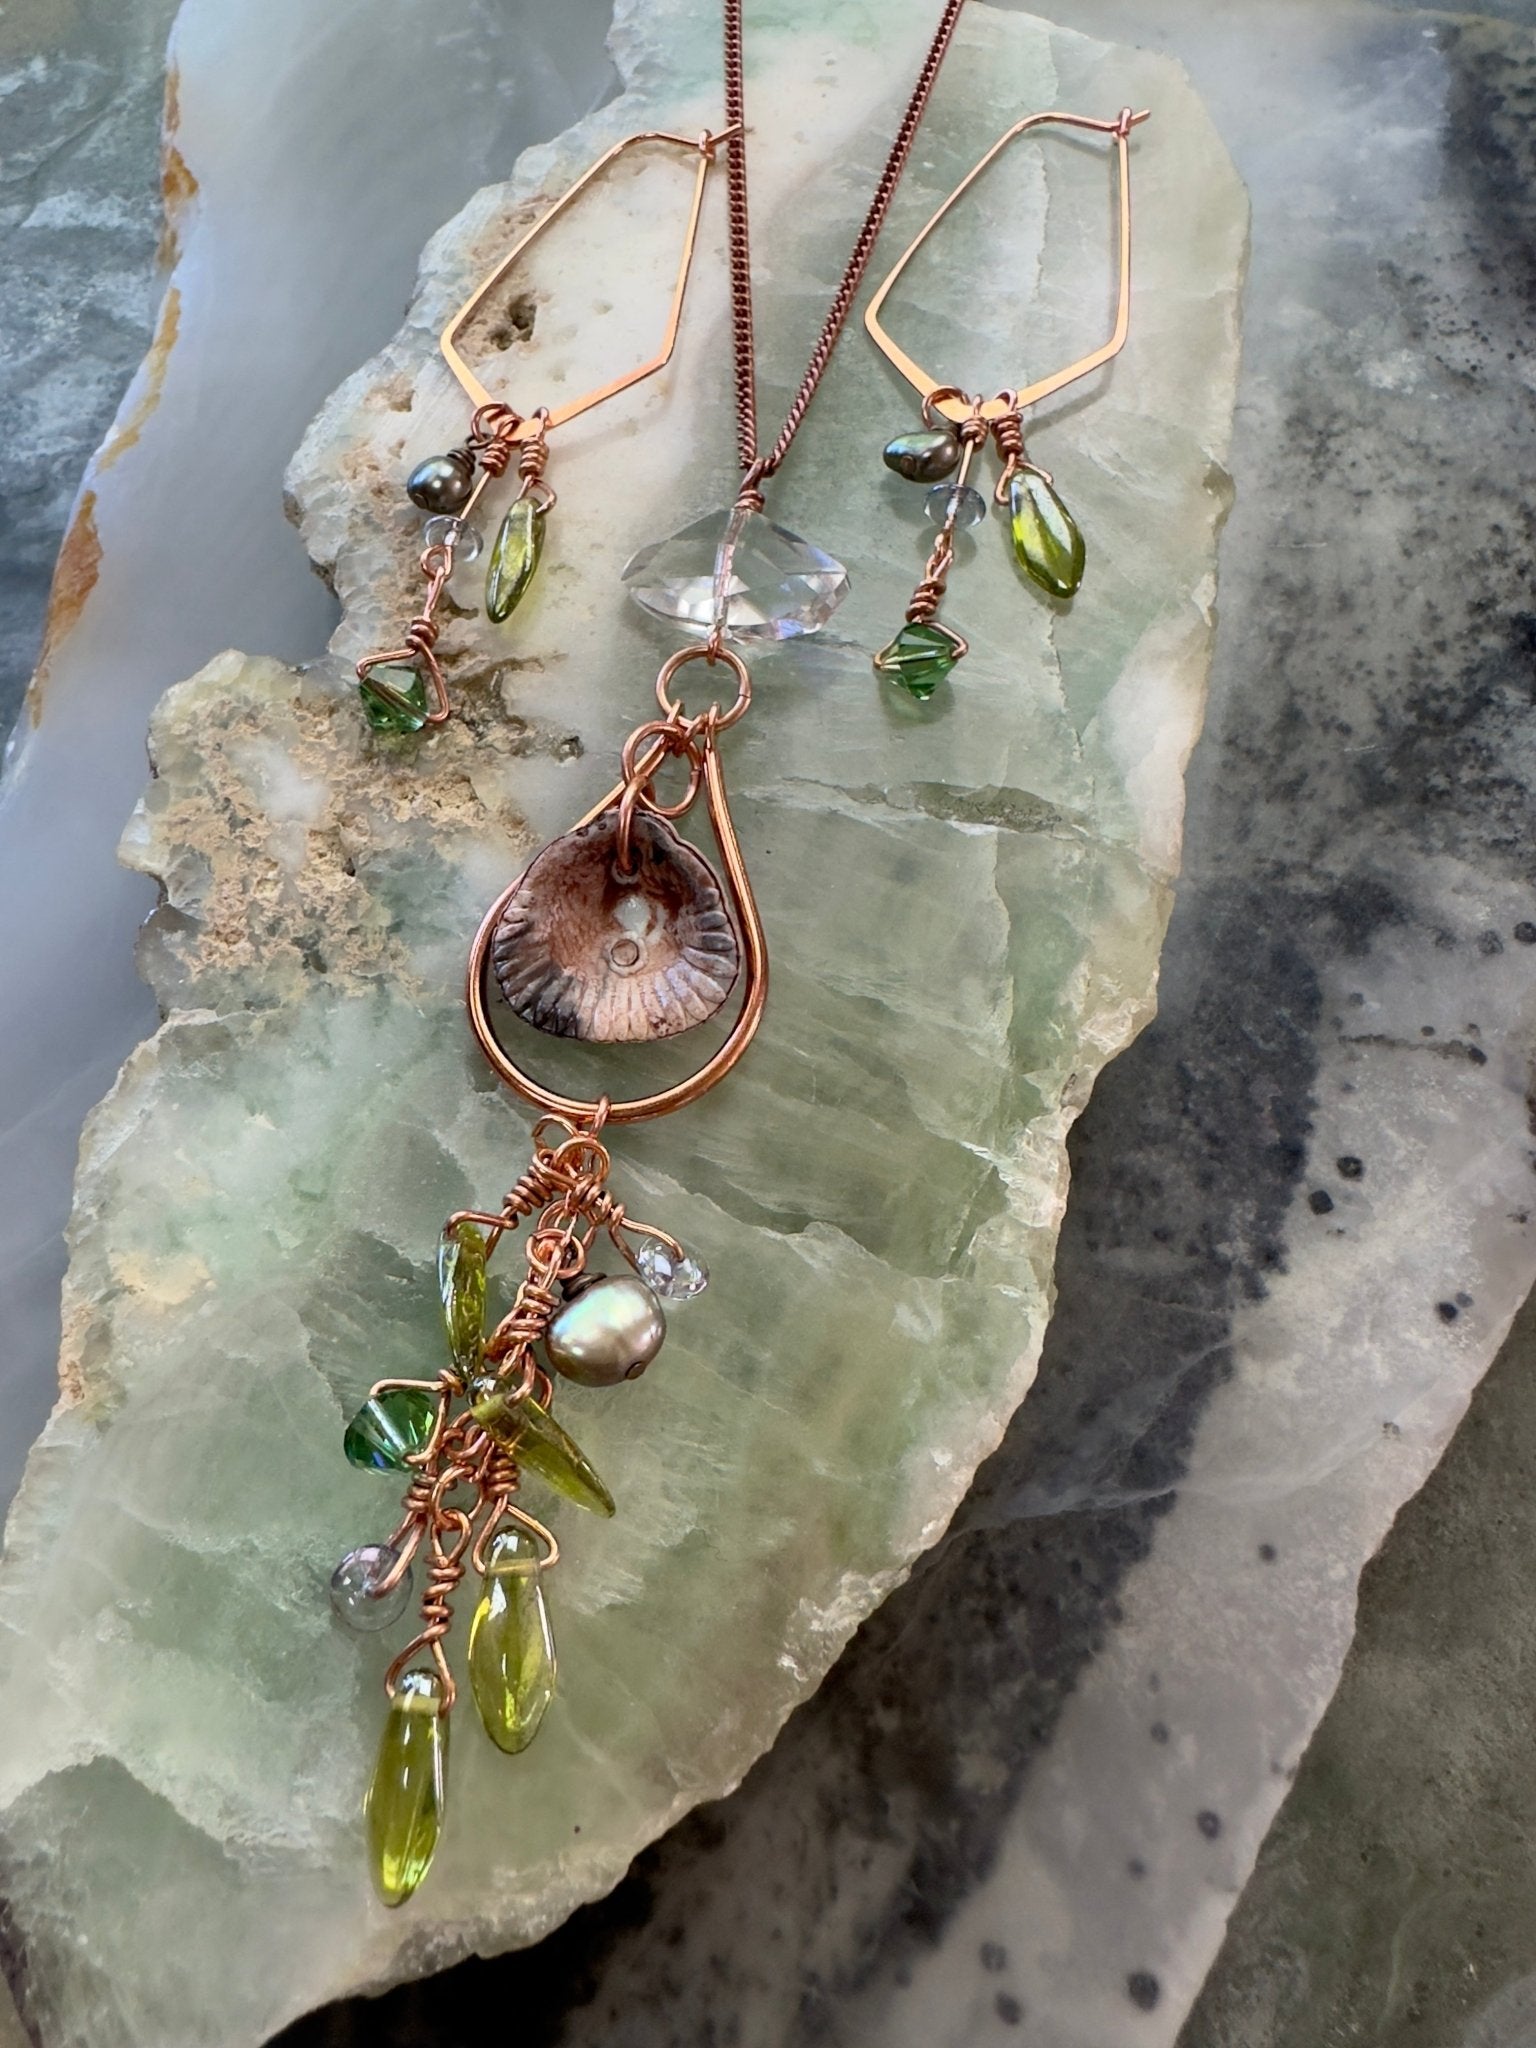 Tangled Sea Necklace Earrings Kit - Vintaj Design - 4/26/24 - Vintaj Live Shop